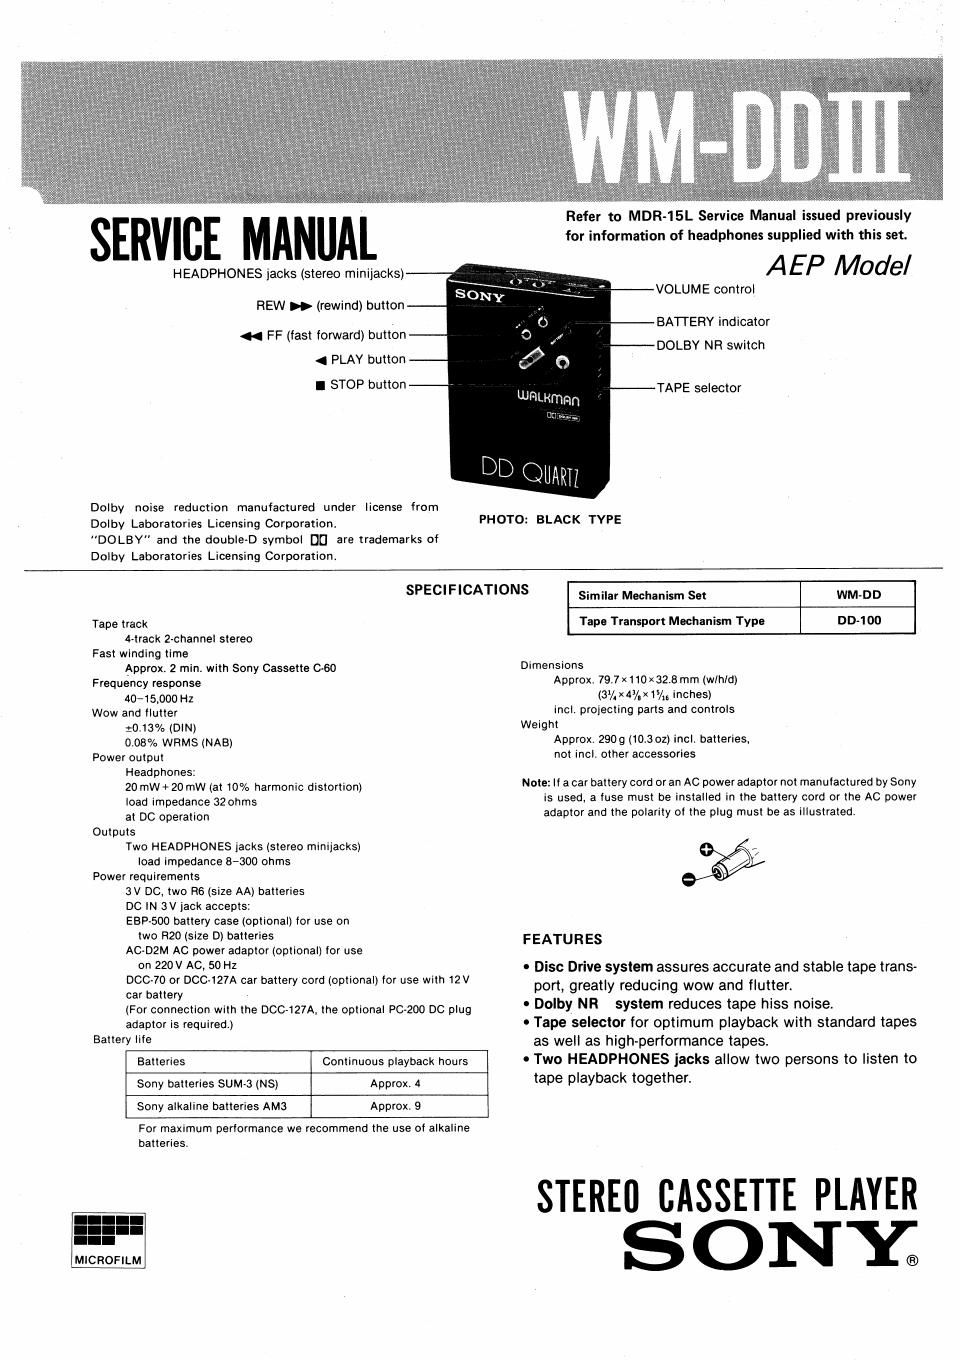 sony wm dd mk3 service manual